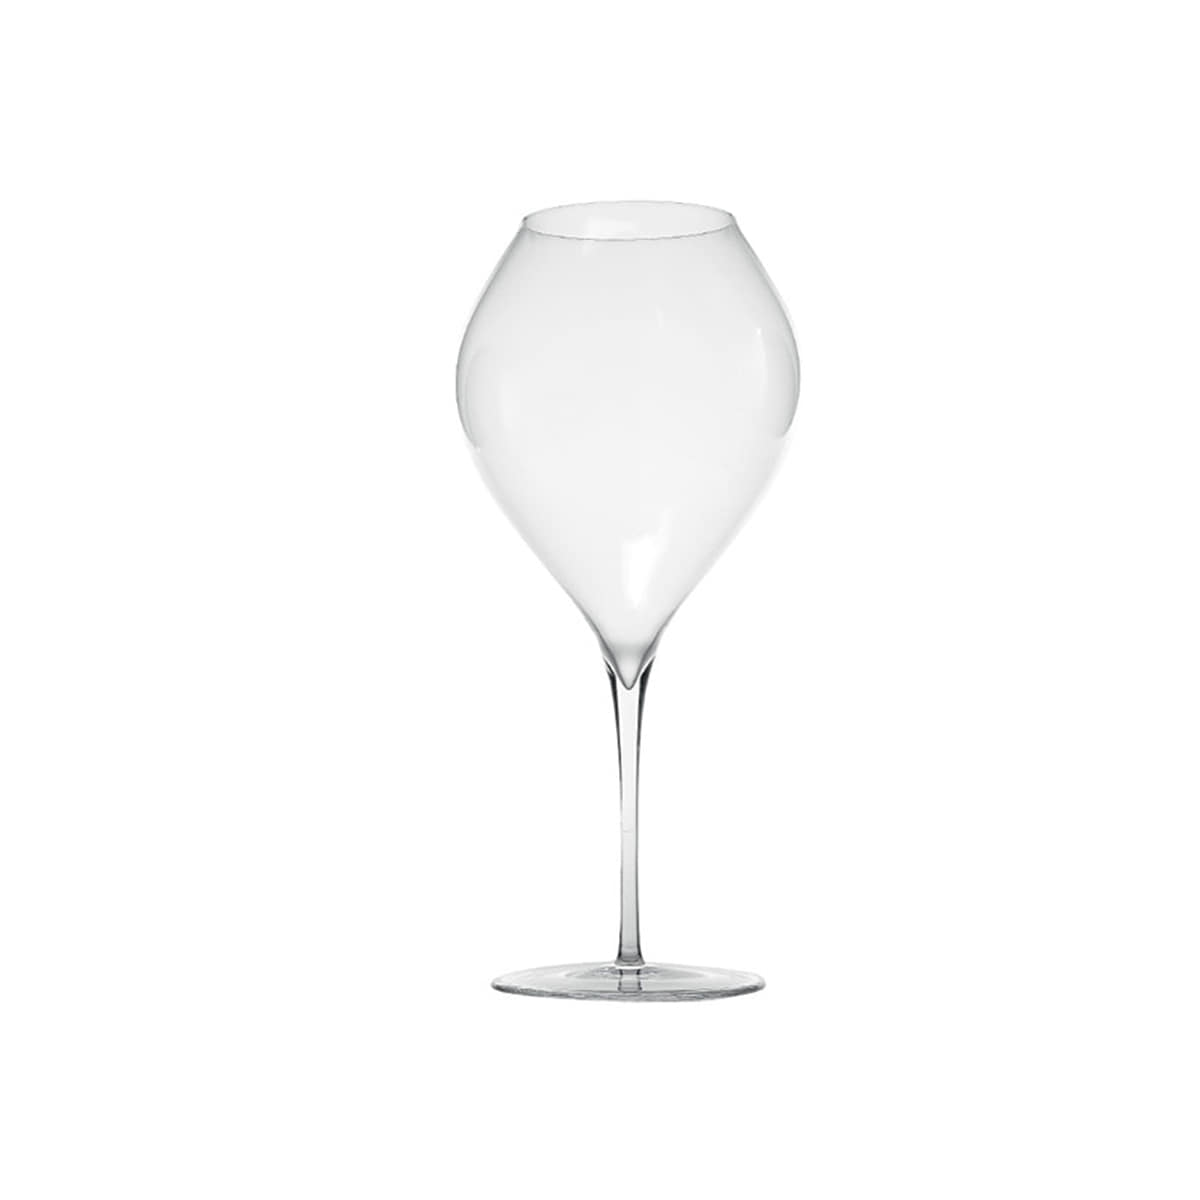 ZAFFERANO ULTRALIGHT Wine Glass 자페라노 울트라라이트 와인잔_UL08200MADE IN HUNGARY